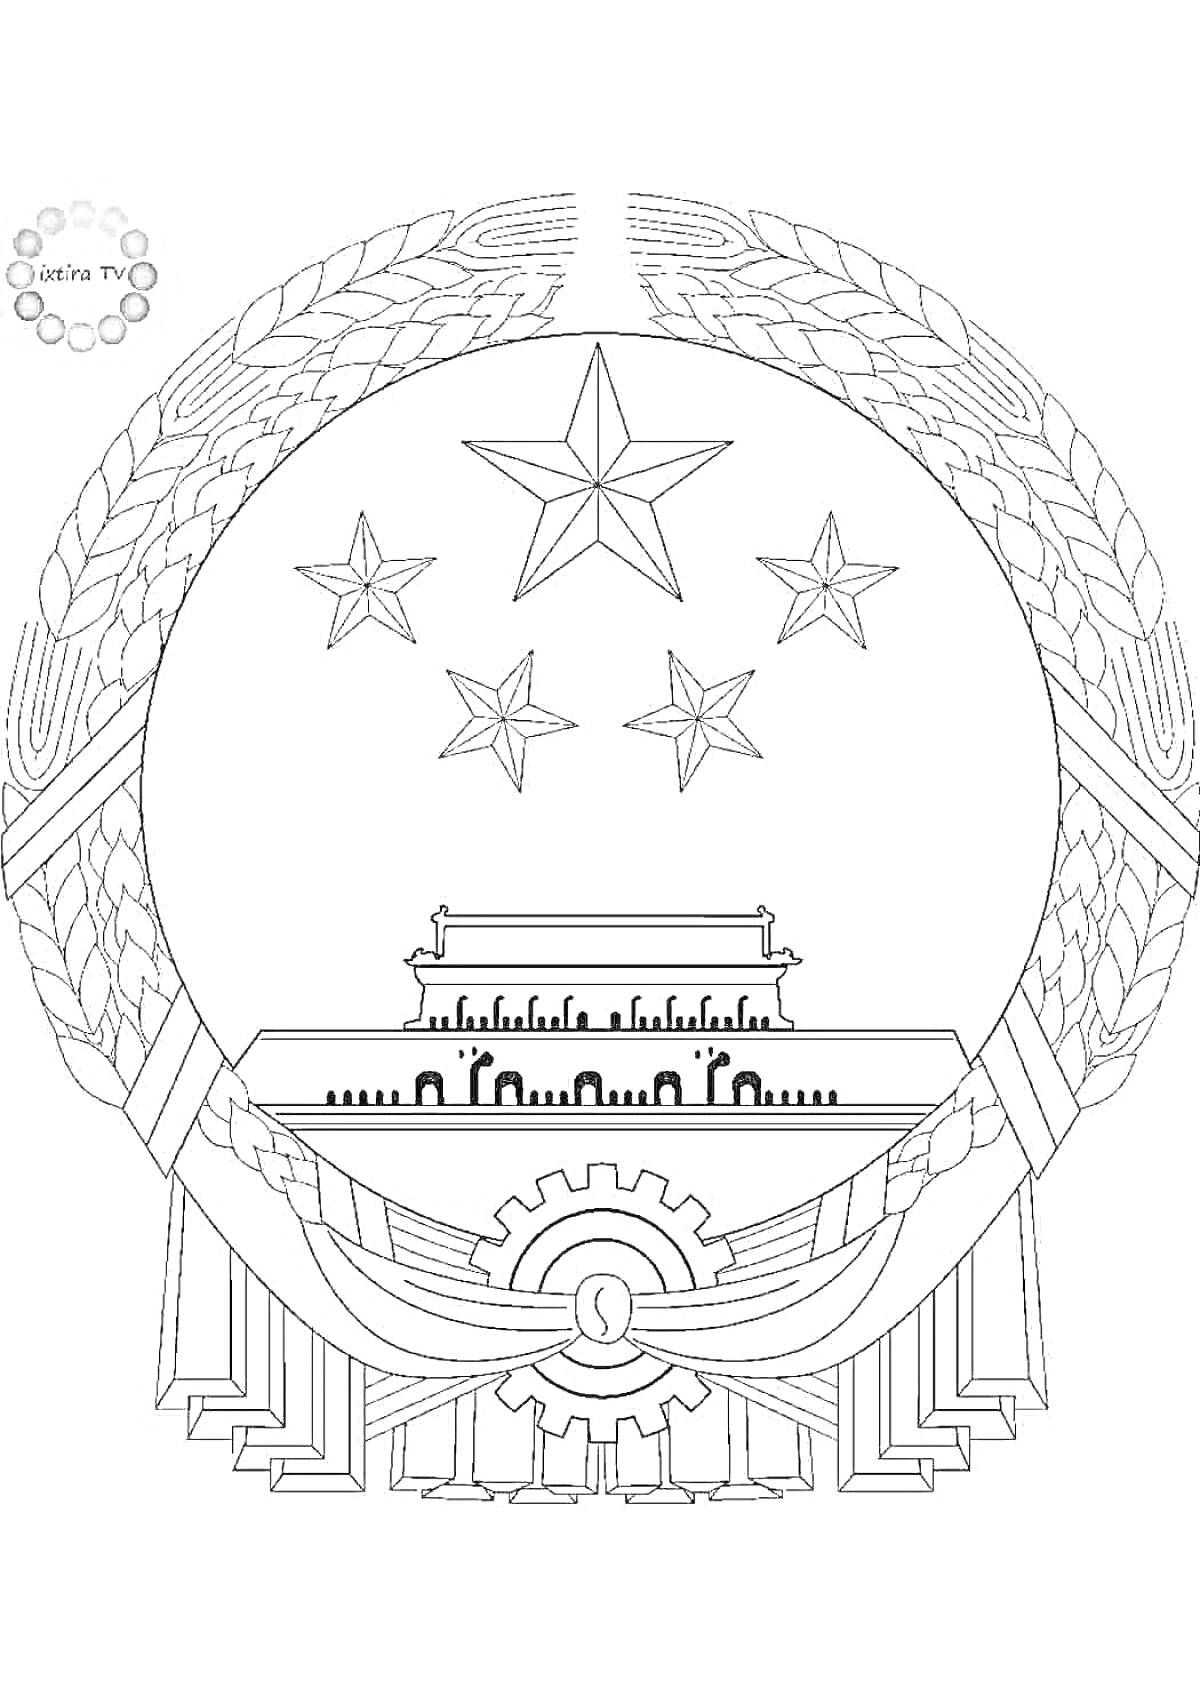 Раскраска Герб Китая с пятиконечными звездами, зданием и зубчатым колесом, окруженными пшеничными колосьями и лентами